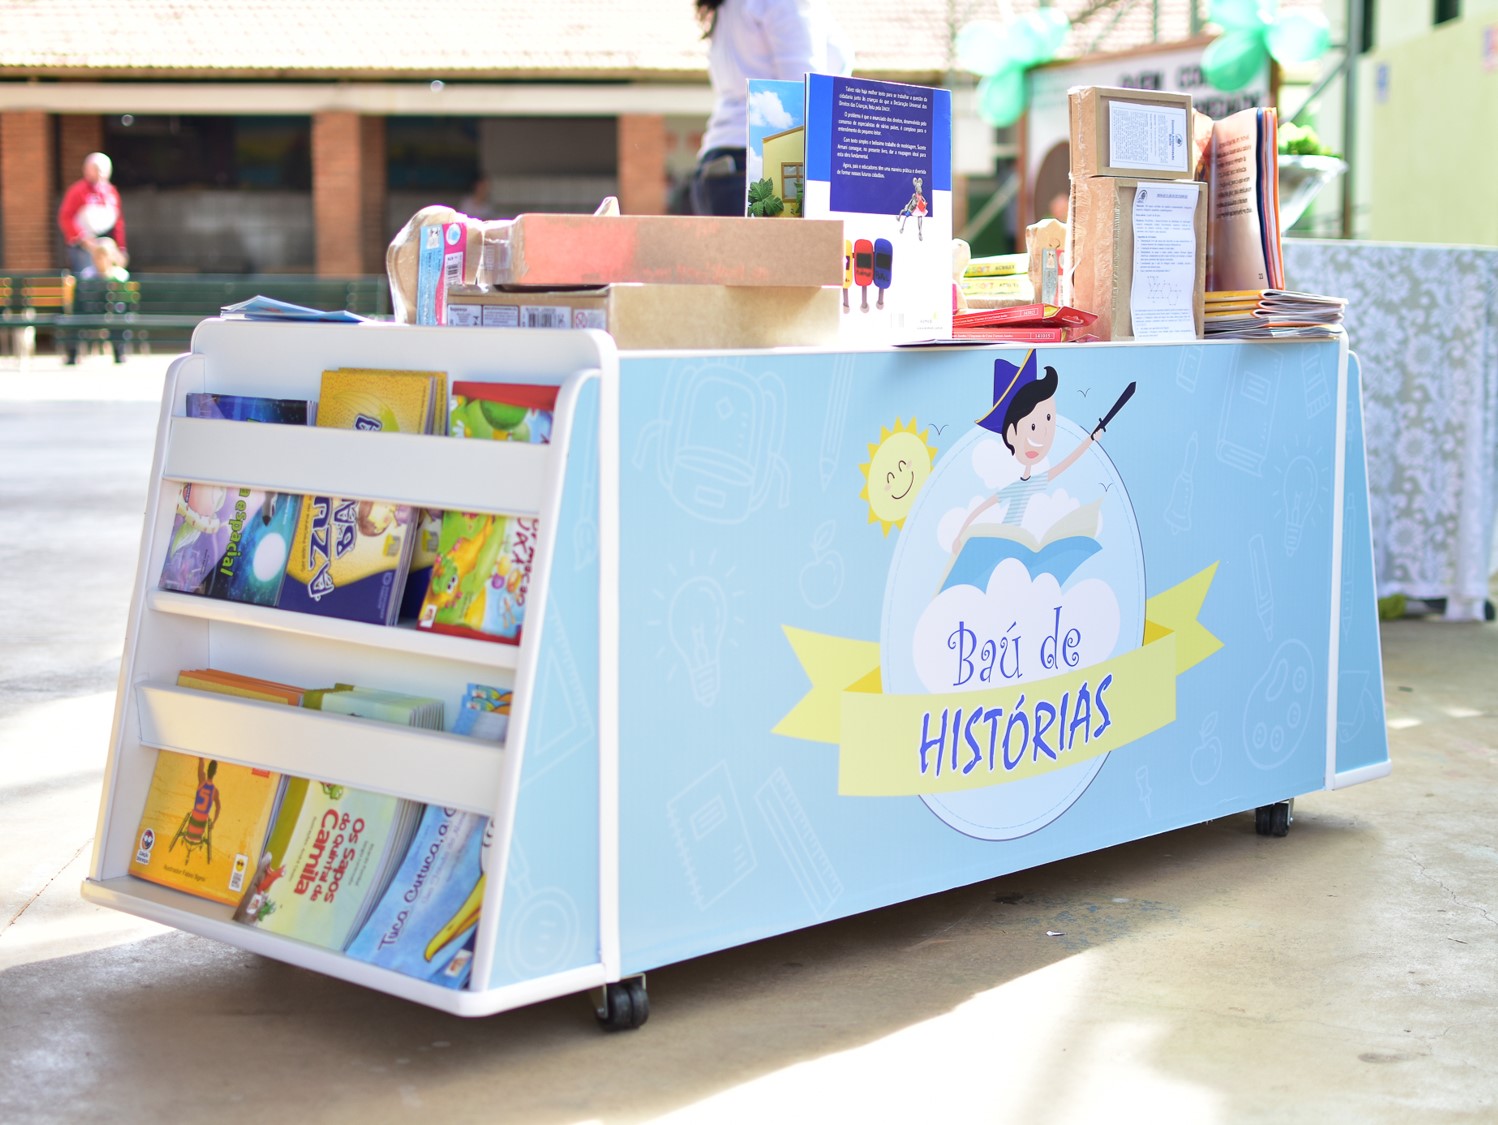 Projeto “Baú de Histórias” entrega duas bibliotecas móveis em Bragança